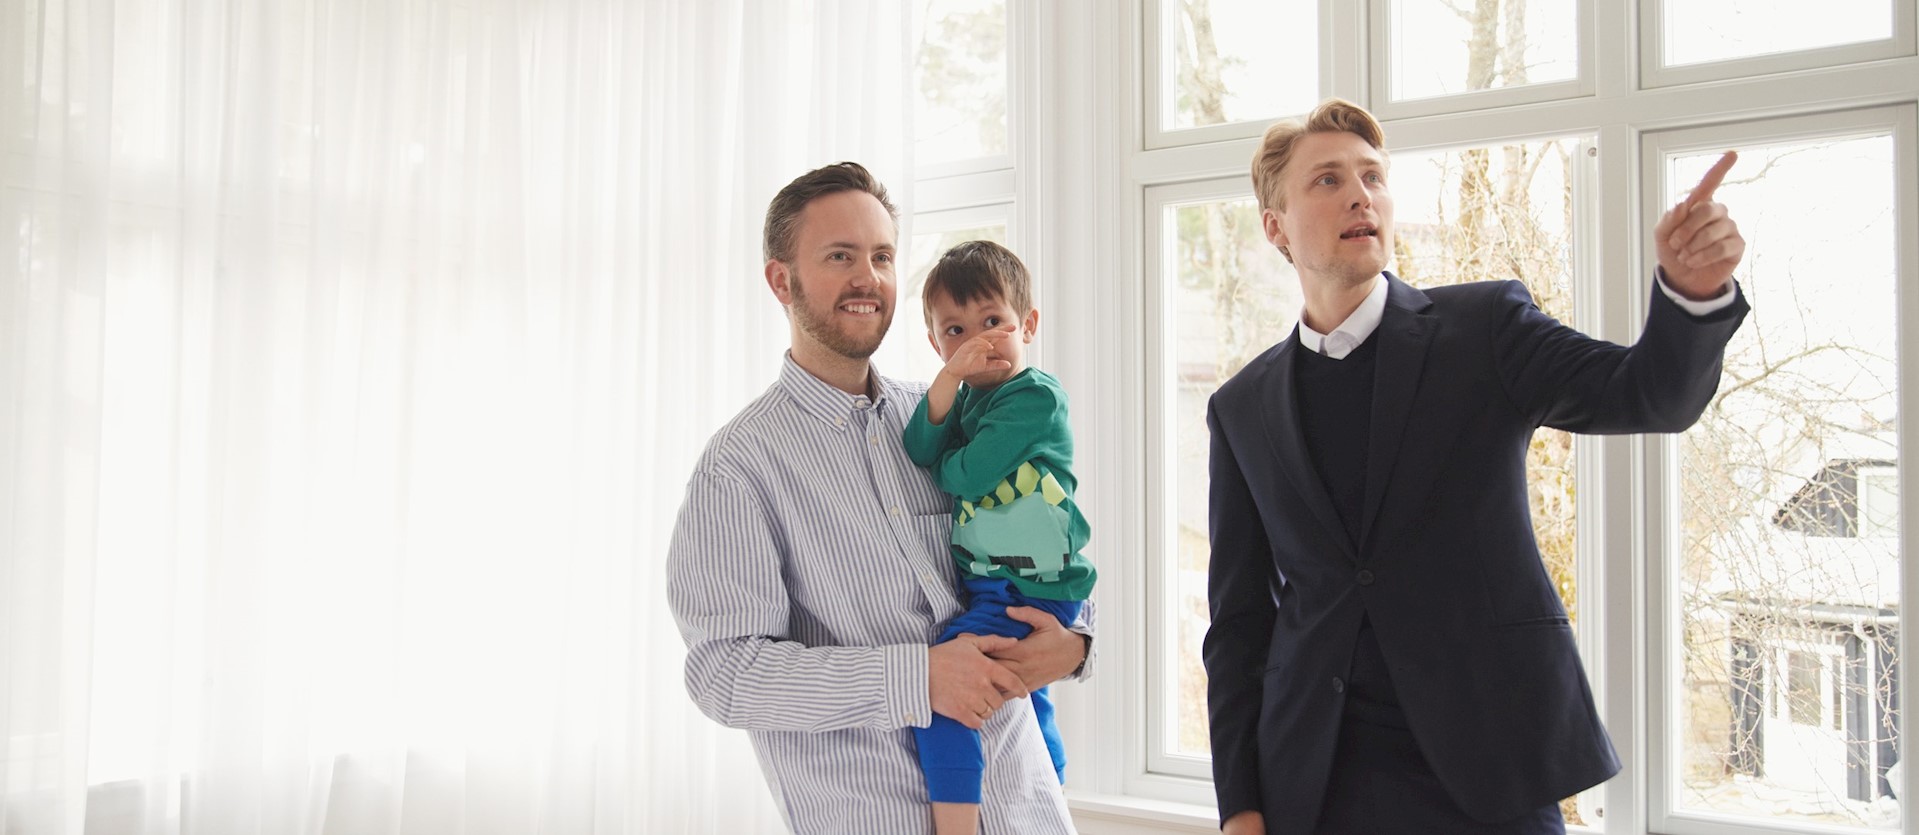 Eiendomsmegler viser mann og sønn rundt i en bolig.